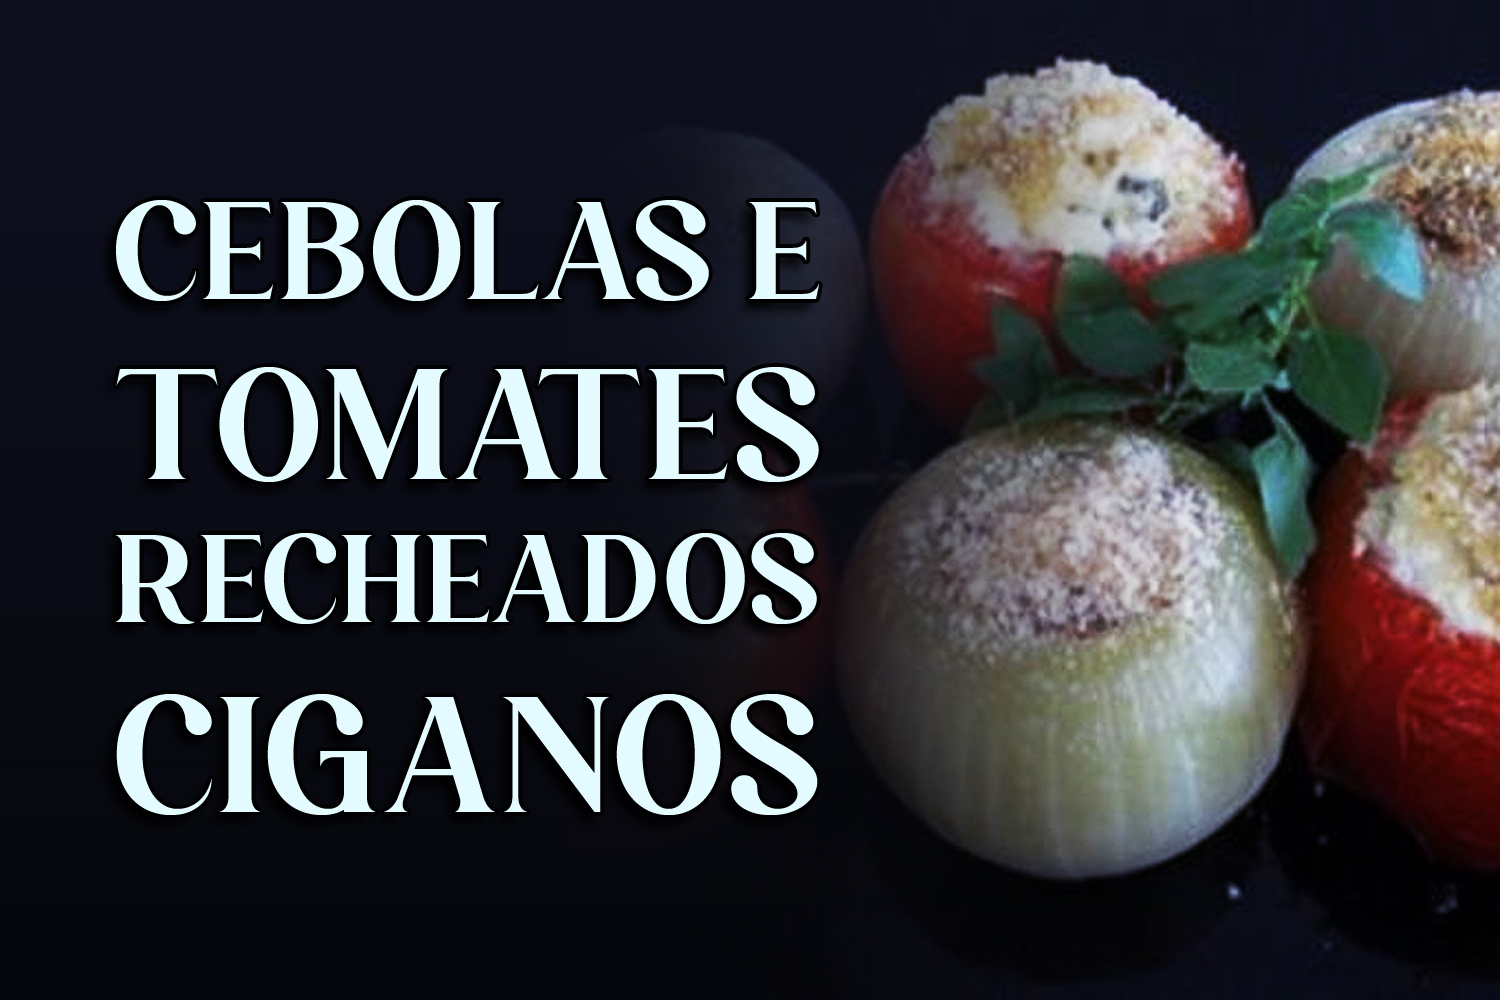 Cebolas e Tomates Recheados Ciganos